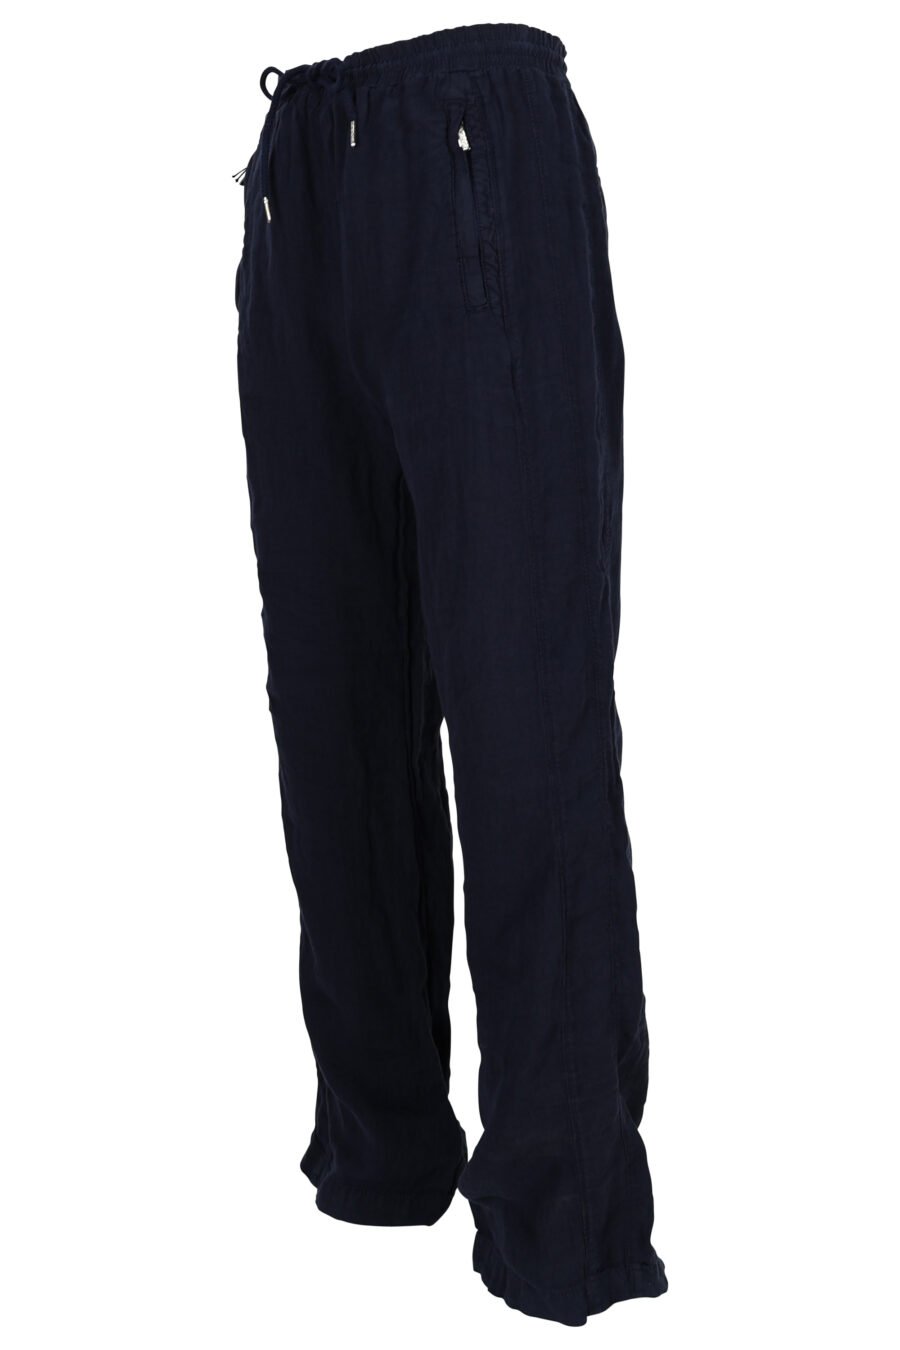 Pantalón de chándal azul oscuro con minilogo - 4062226851497 1